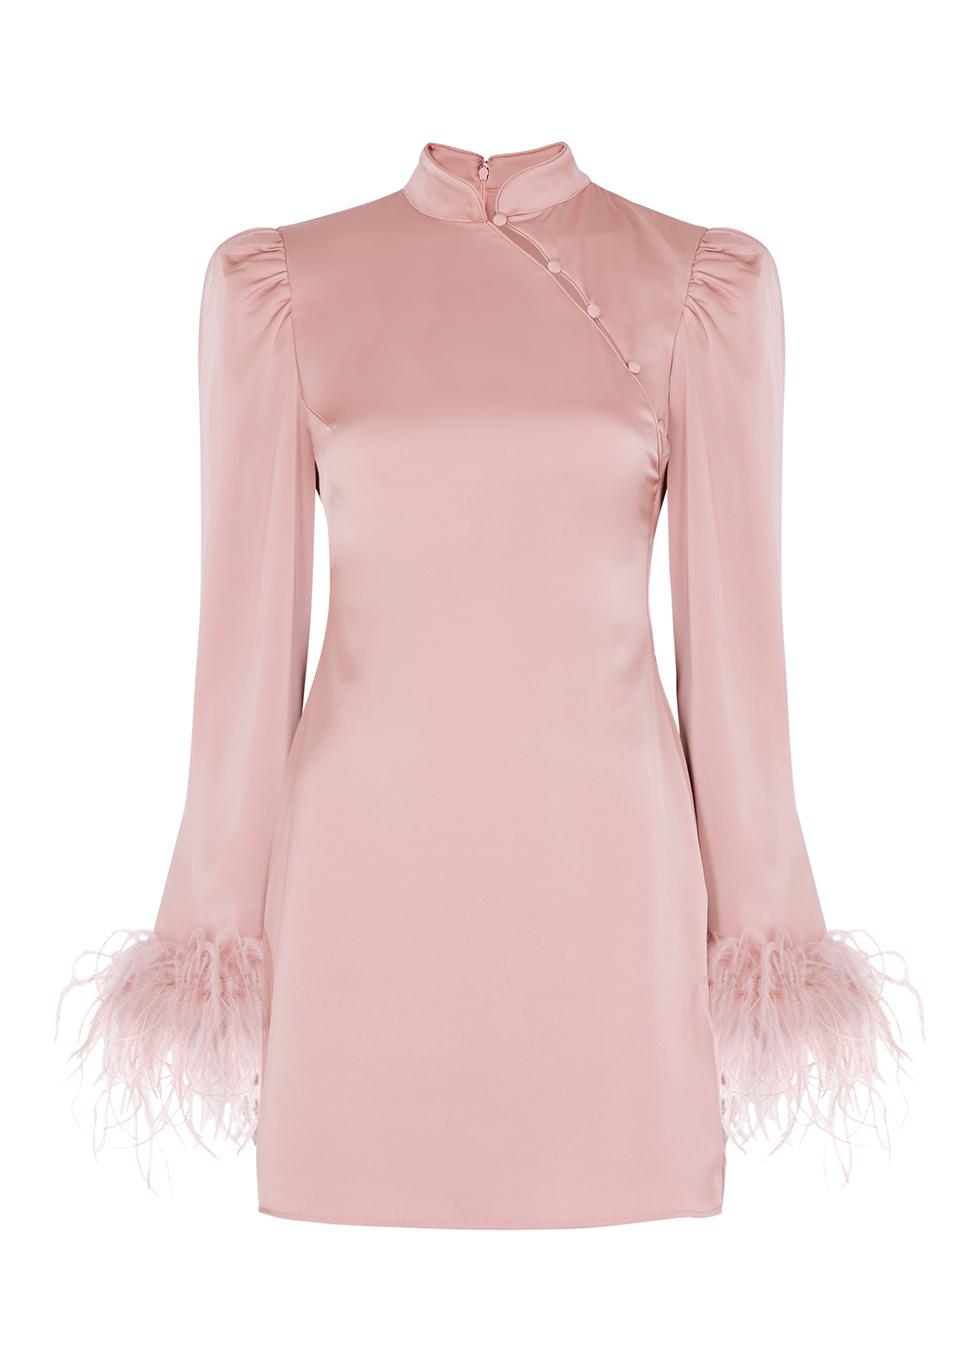 Limousine pink feather-trimmed satin mini dress by DE LA VALI